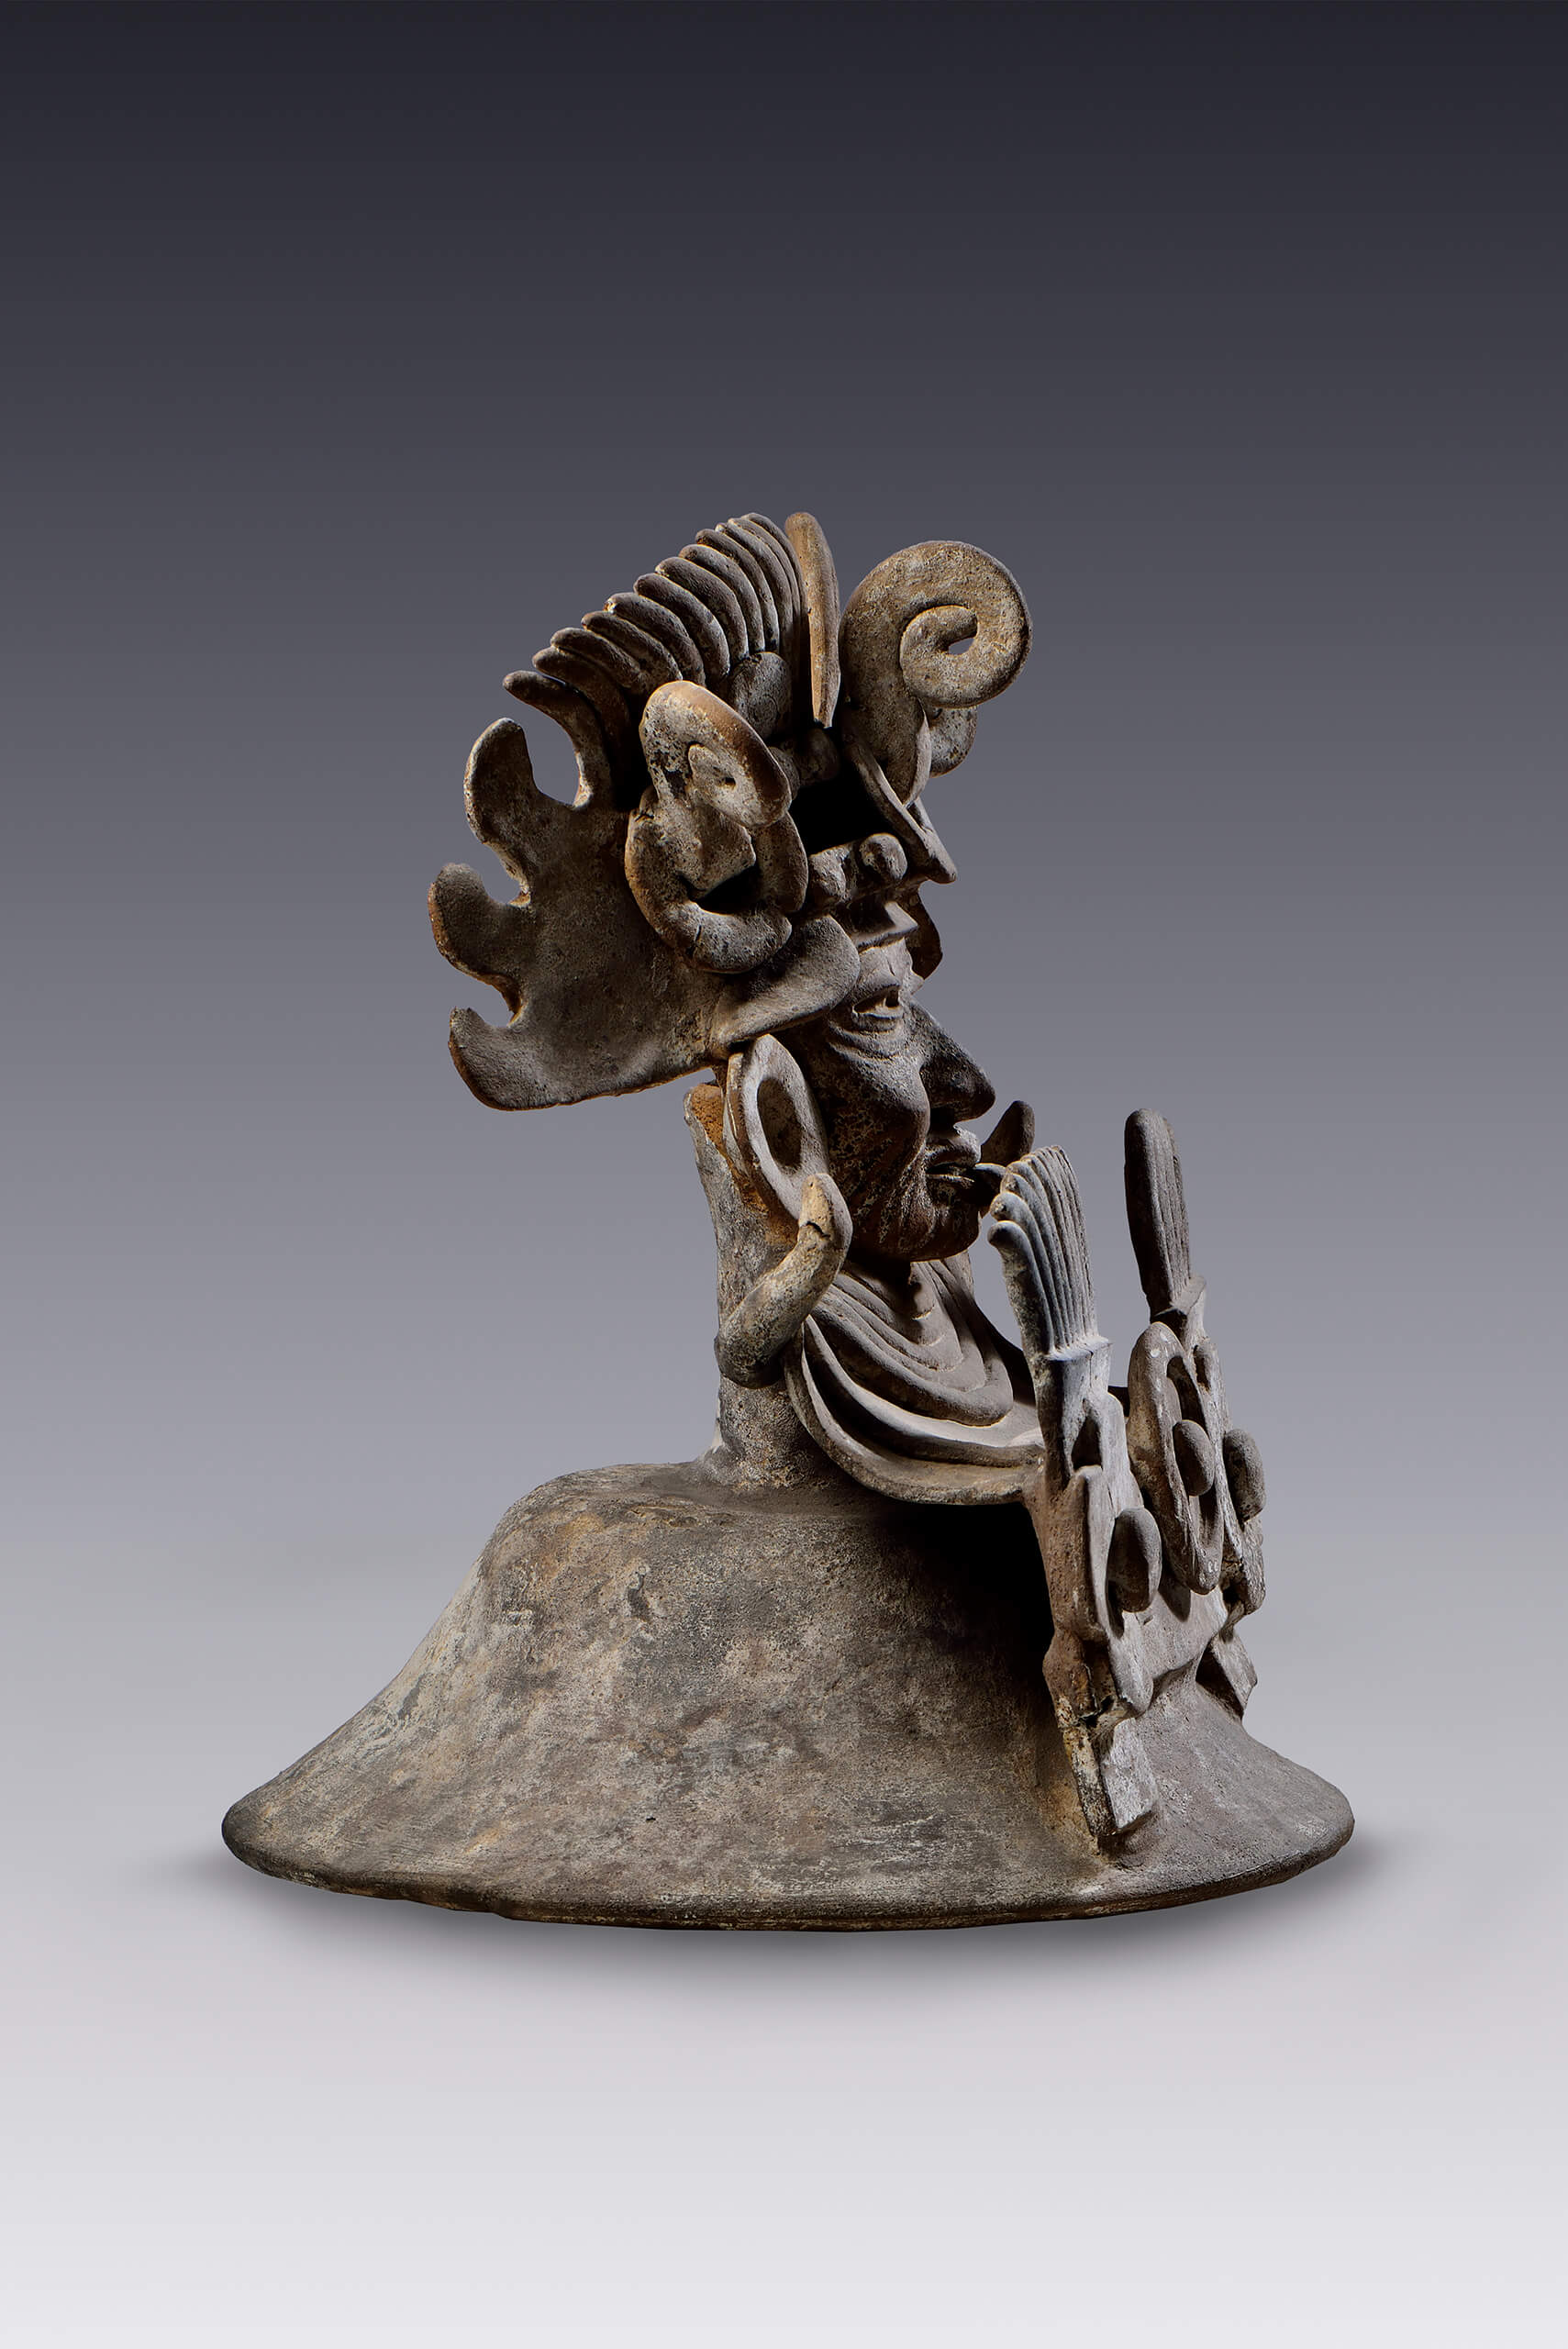 Tapa de brasero con representación del dios viejo | El tiempo en las cosas II. Salas de Arte Contemporáneo | Museo Amparo, Puebla